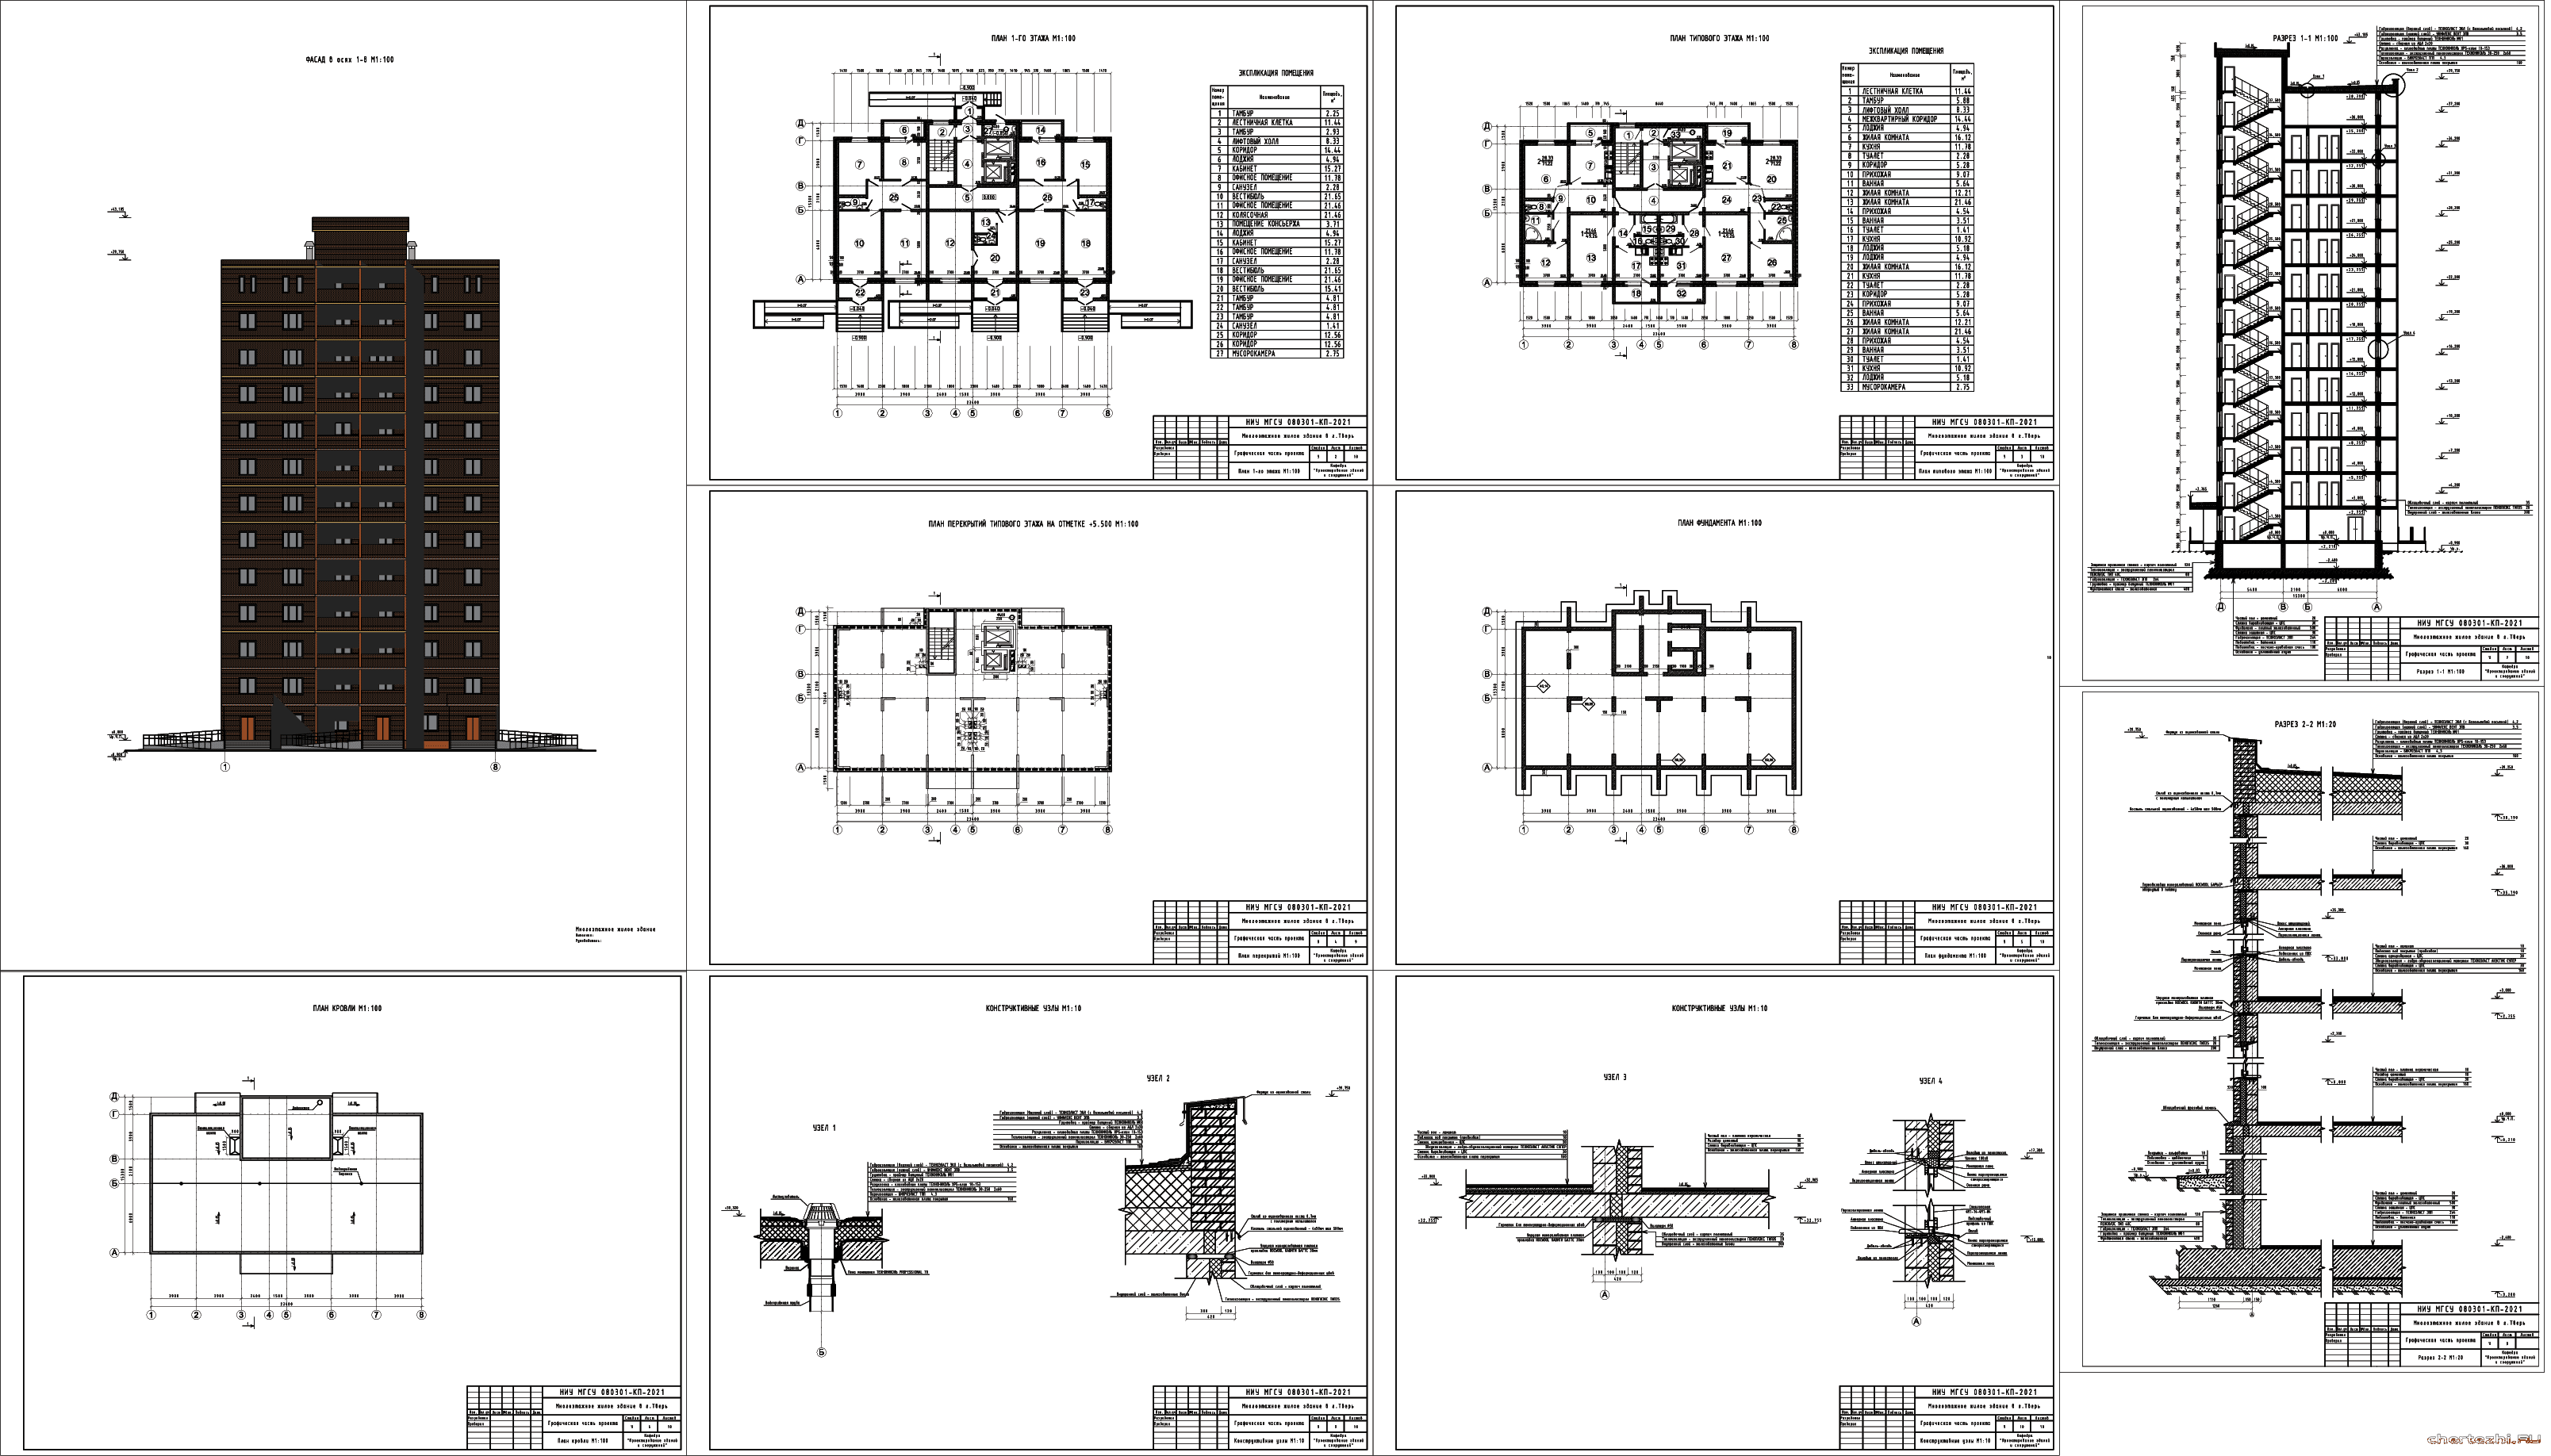 Курсовой проект - 12-ти этажный жилой дом 23,4 х 15,3 м в г. Тверь